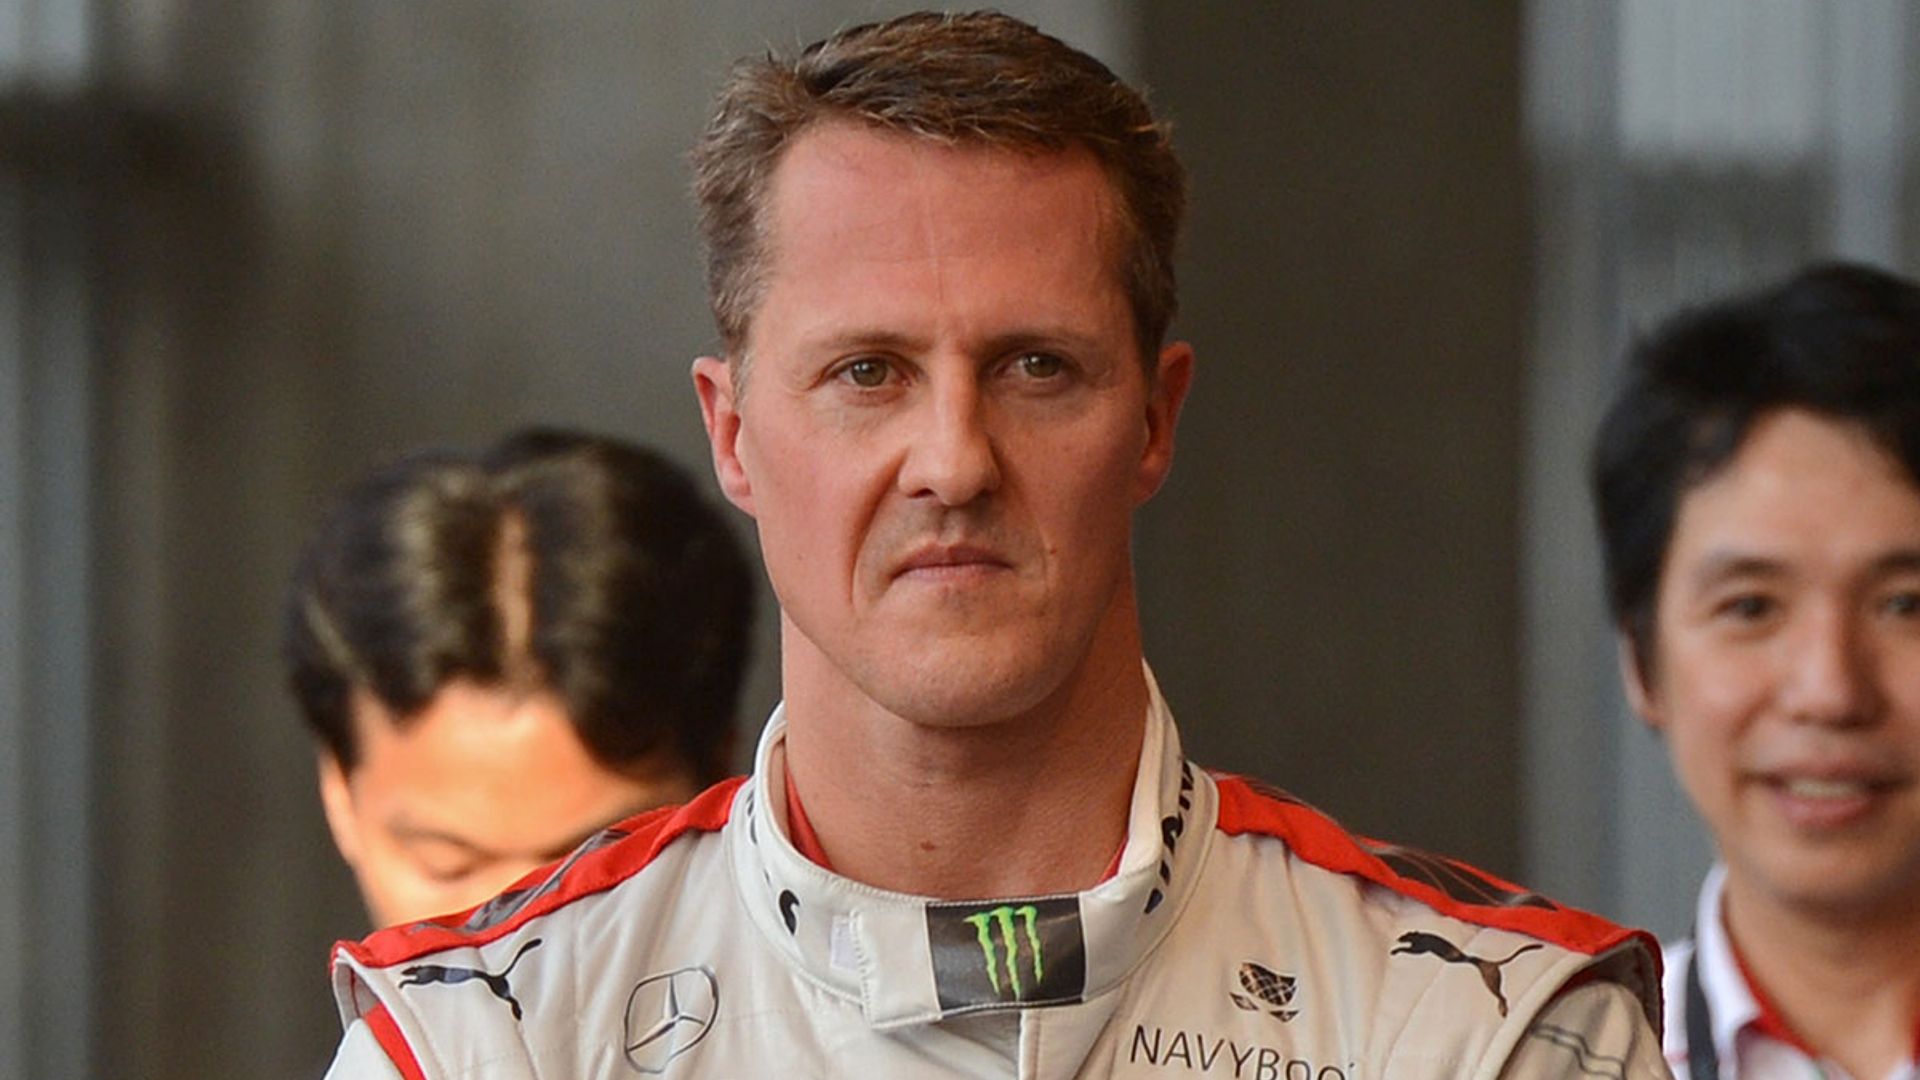 Michael Schumacher's former Ferrari boss gives rare update on his health